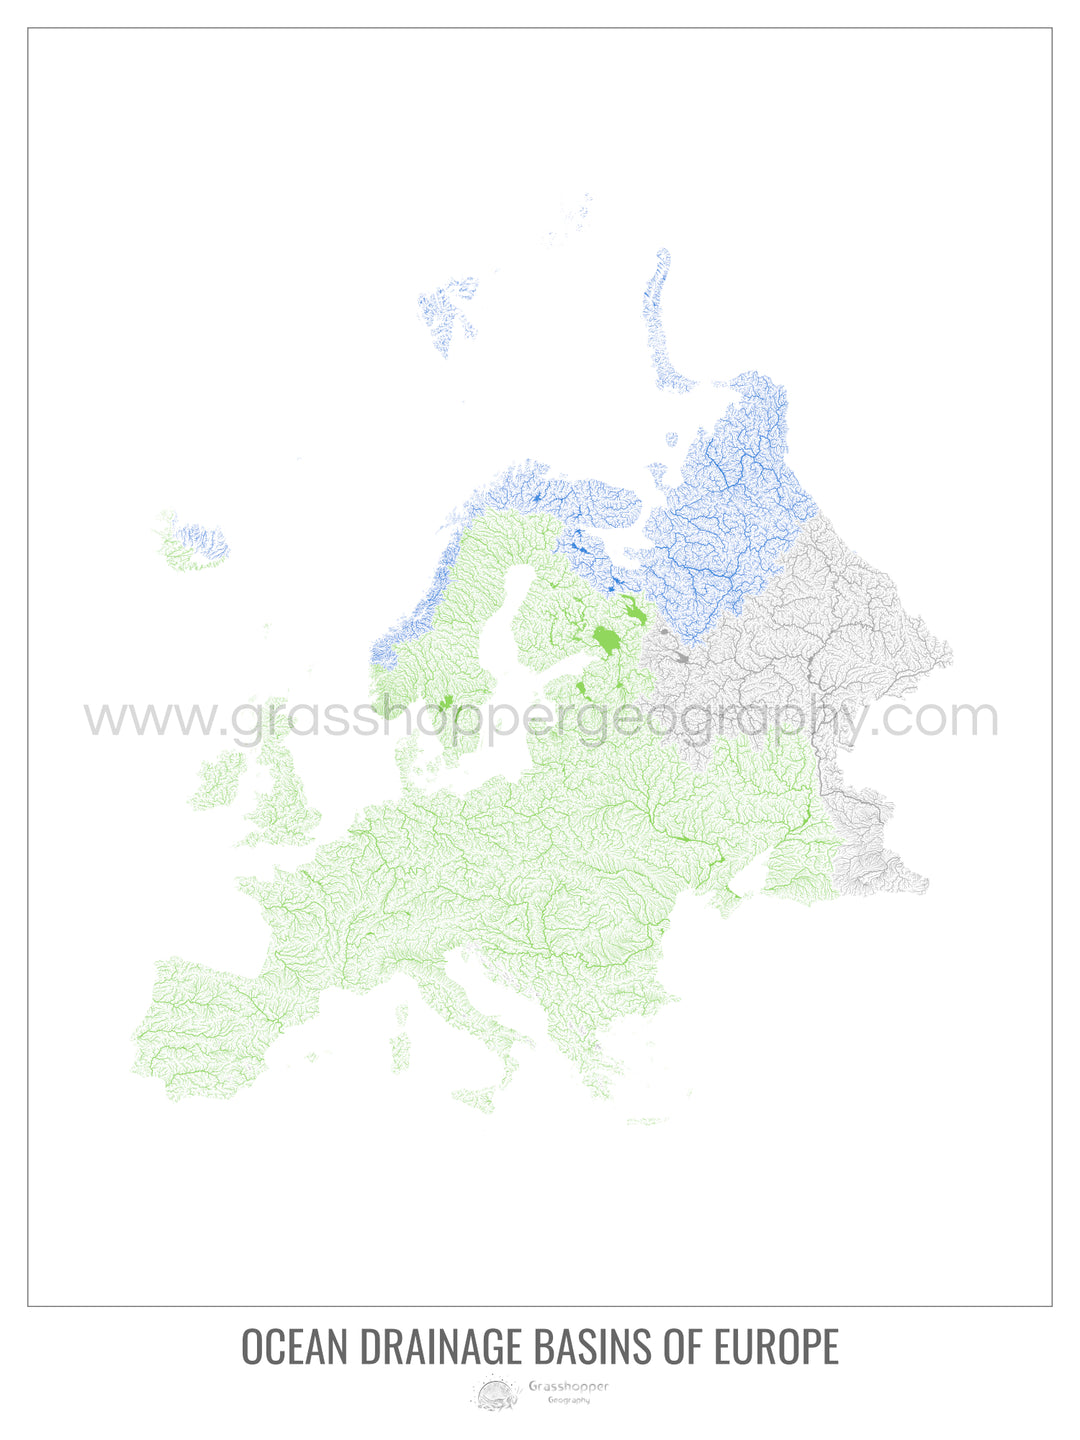 Europe - Ocean drainage basin map, white v1 - Framed Print